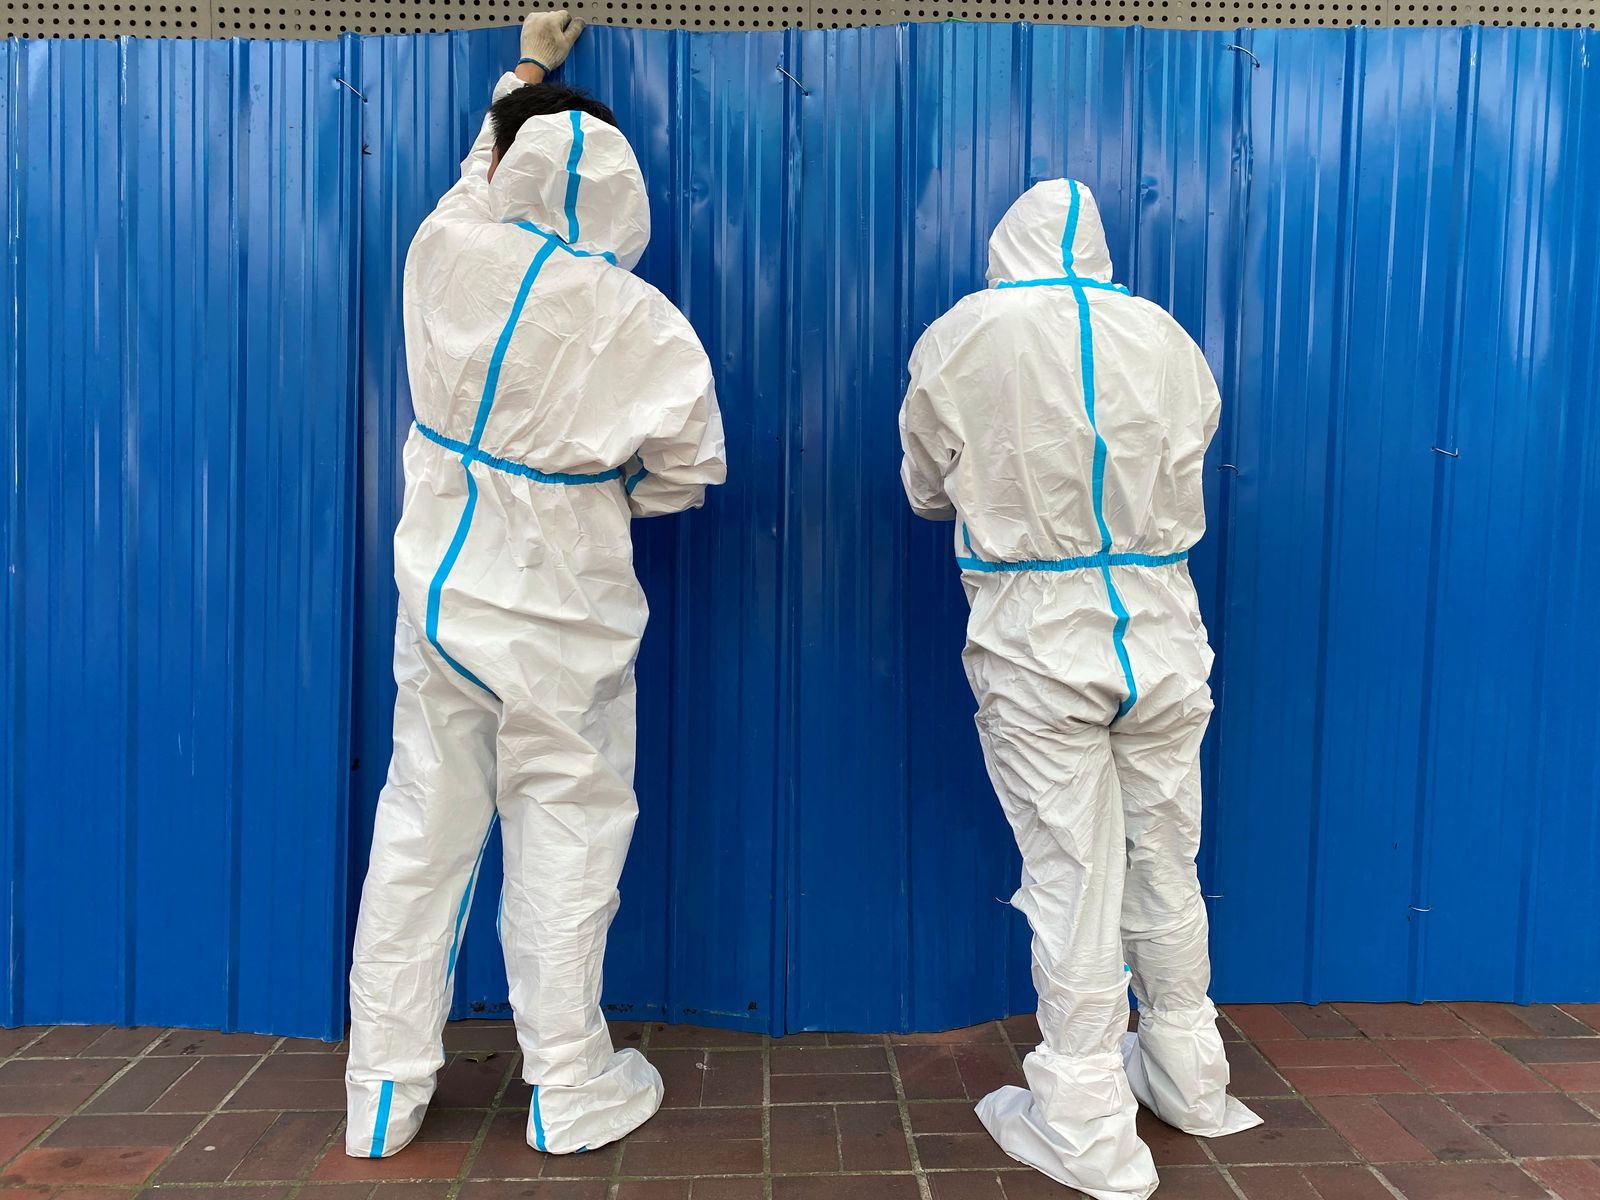 عاملان يرتديان الملابس الواقية يقيمان حواجز خارج مبنى في أعقاب تفشي مرض كورونا في شنغهاي. 9 يونيو 2022 - REUTERS